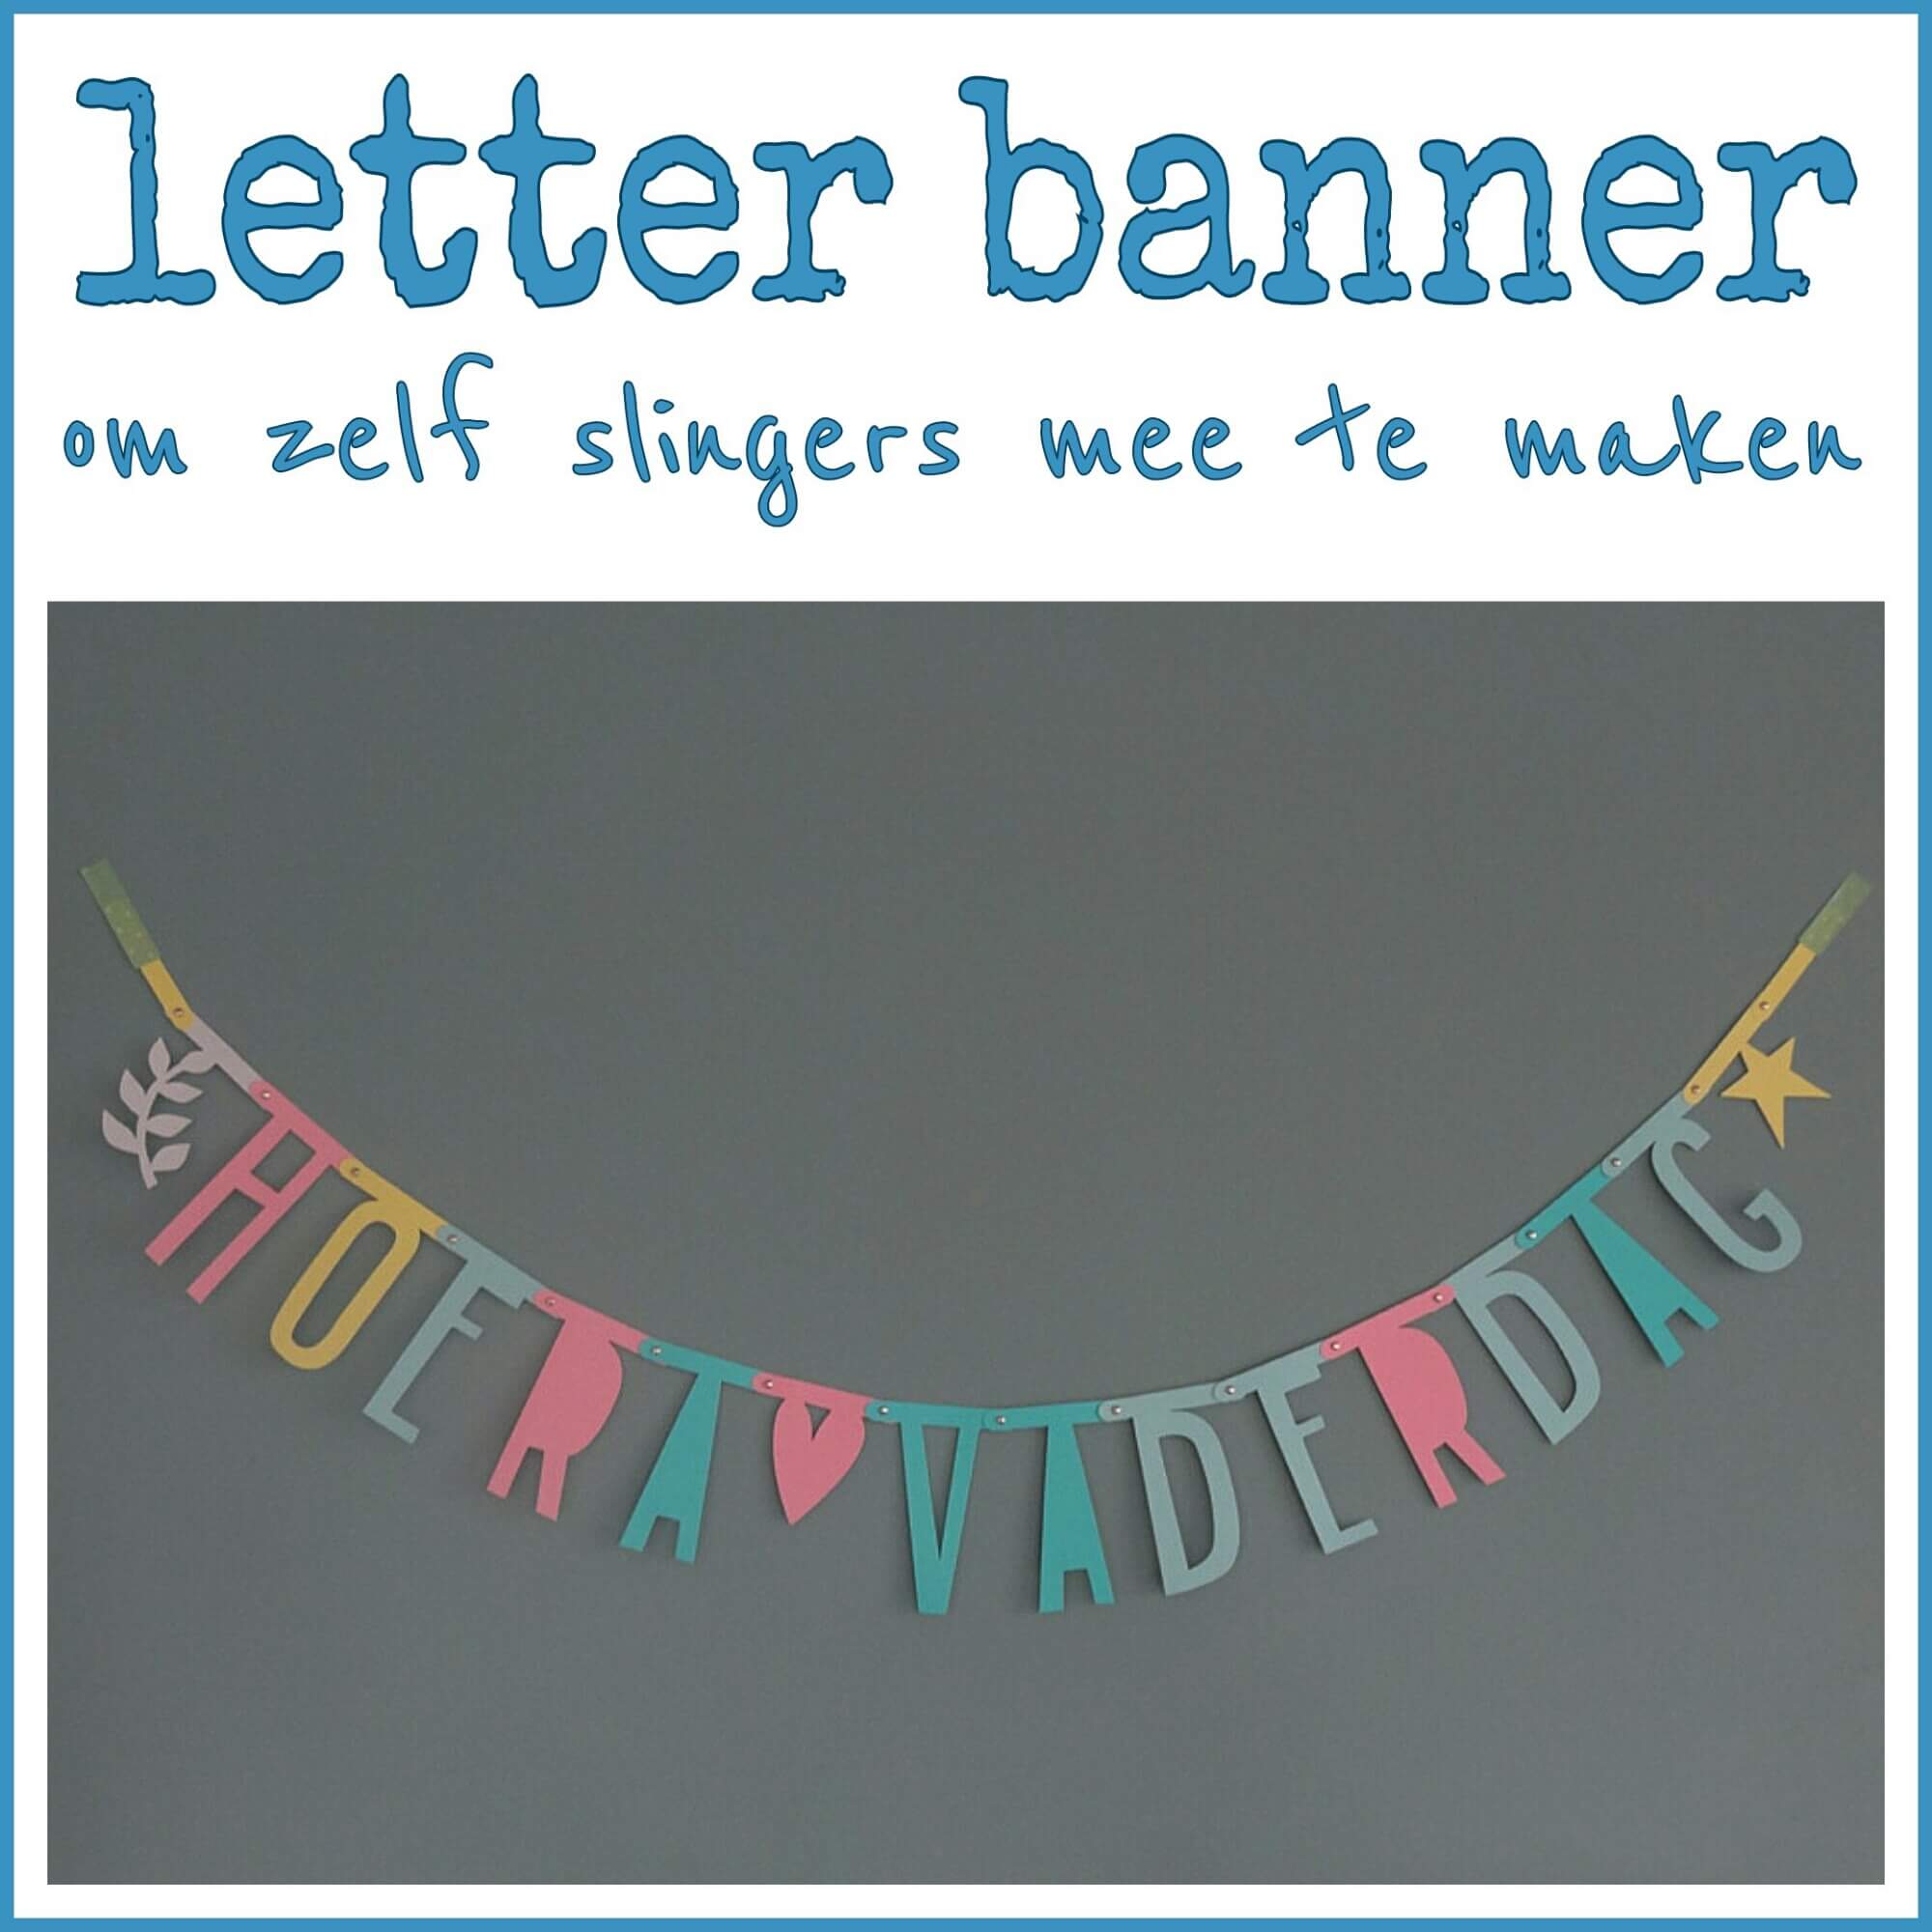 haak Schande Geleerde Letter banner om zelf slingers mee te maken - Leuk met kids Leuk met kids